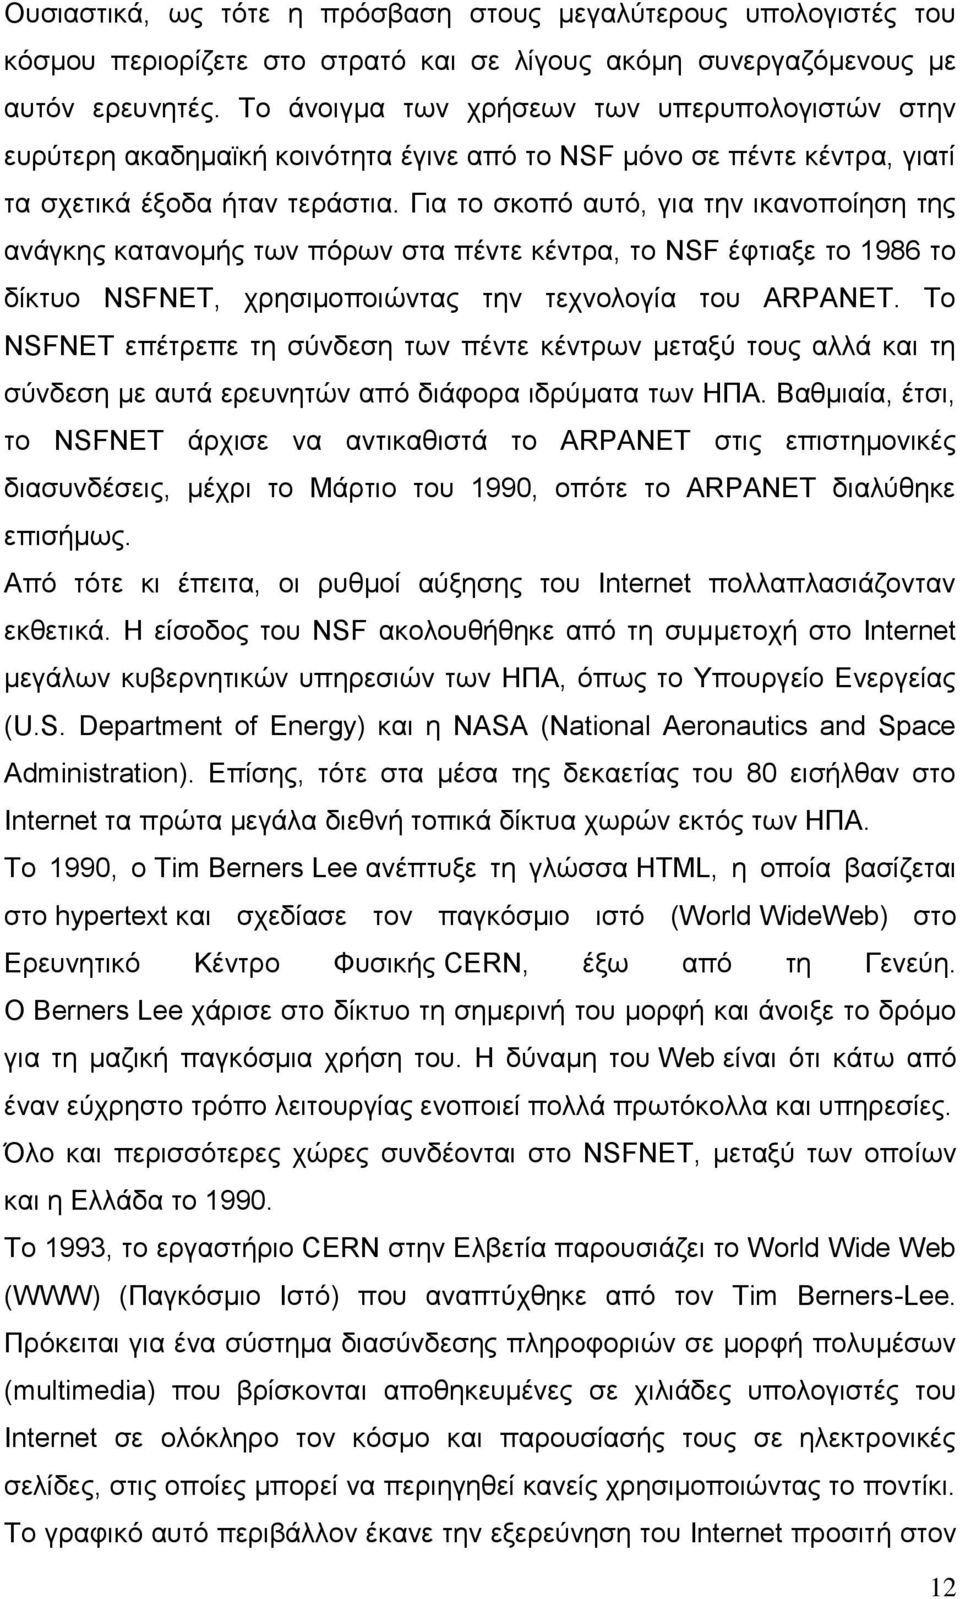 Για το σκοπό αυτό, για την ικανοποίηση της ανάγκης κατανομής των πόρων στα πέντε κέντρα, το NSF έφτιαξε το 1986 το δίκτυο NSFNET, χρησιμοποιώντας την τεχνολογία του ARPANET.